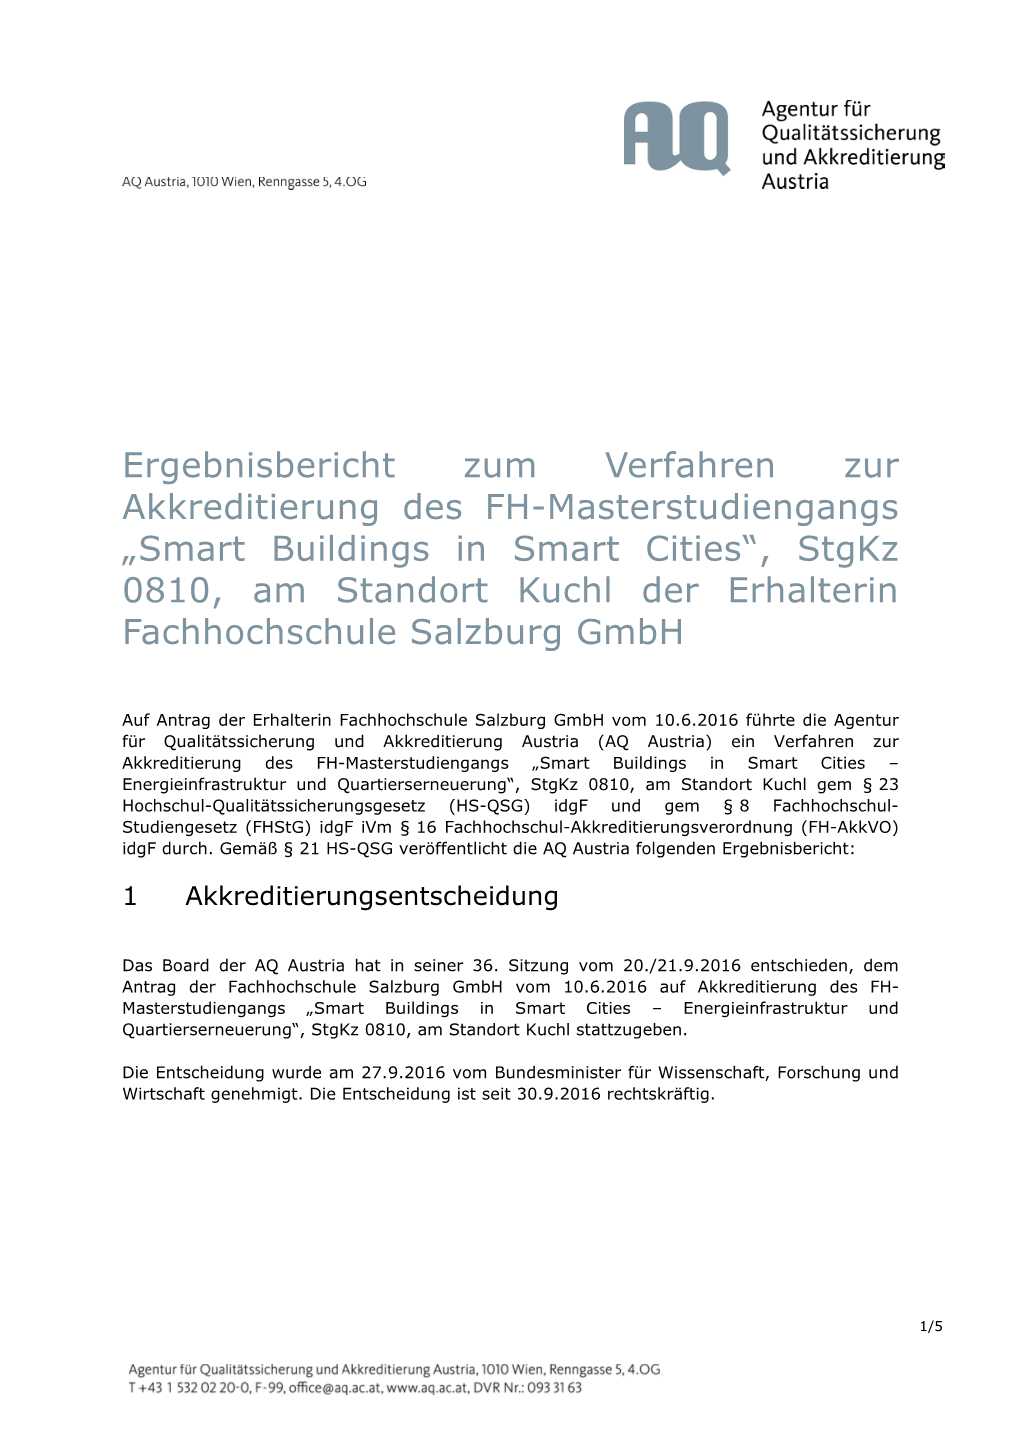 „Smart Buildings in Smart Cities“, Stgkz 0810, Am Standort Kuchl Der Erhalterin Fachhochschule Salzburg Gmbh